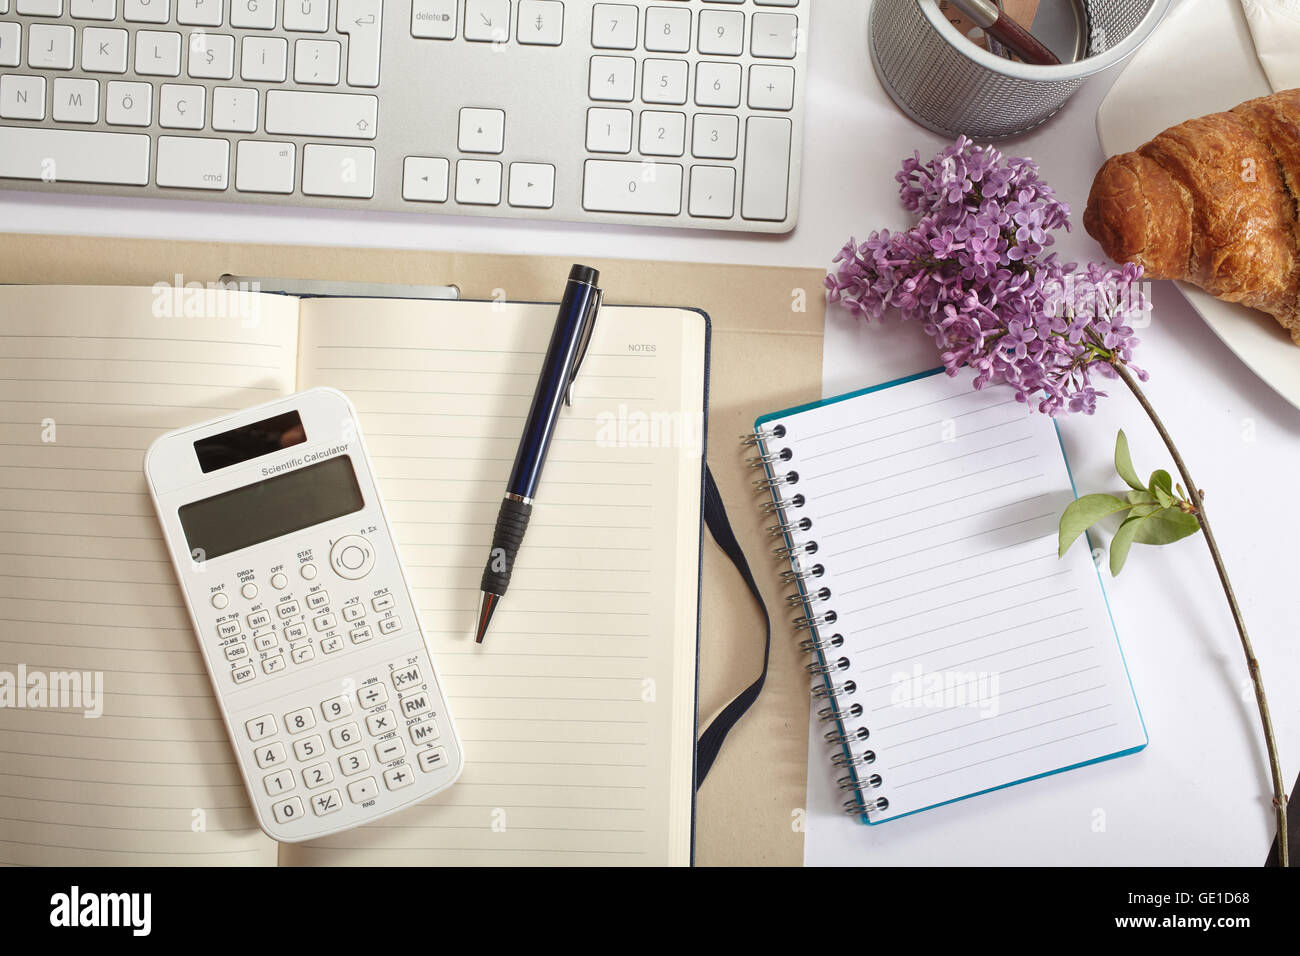 Vista superior de la oficina - croissant, teclado, calculadora, lápiz, flor y bloc de notas en el cuadro blanco Foto de stock